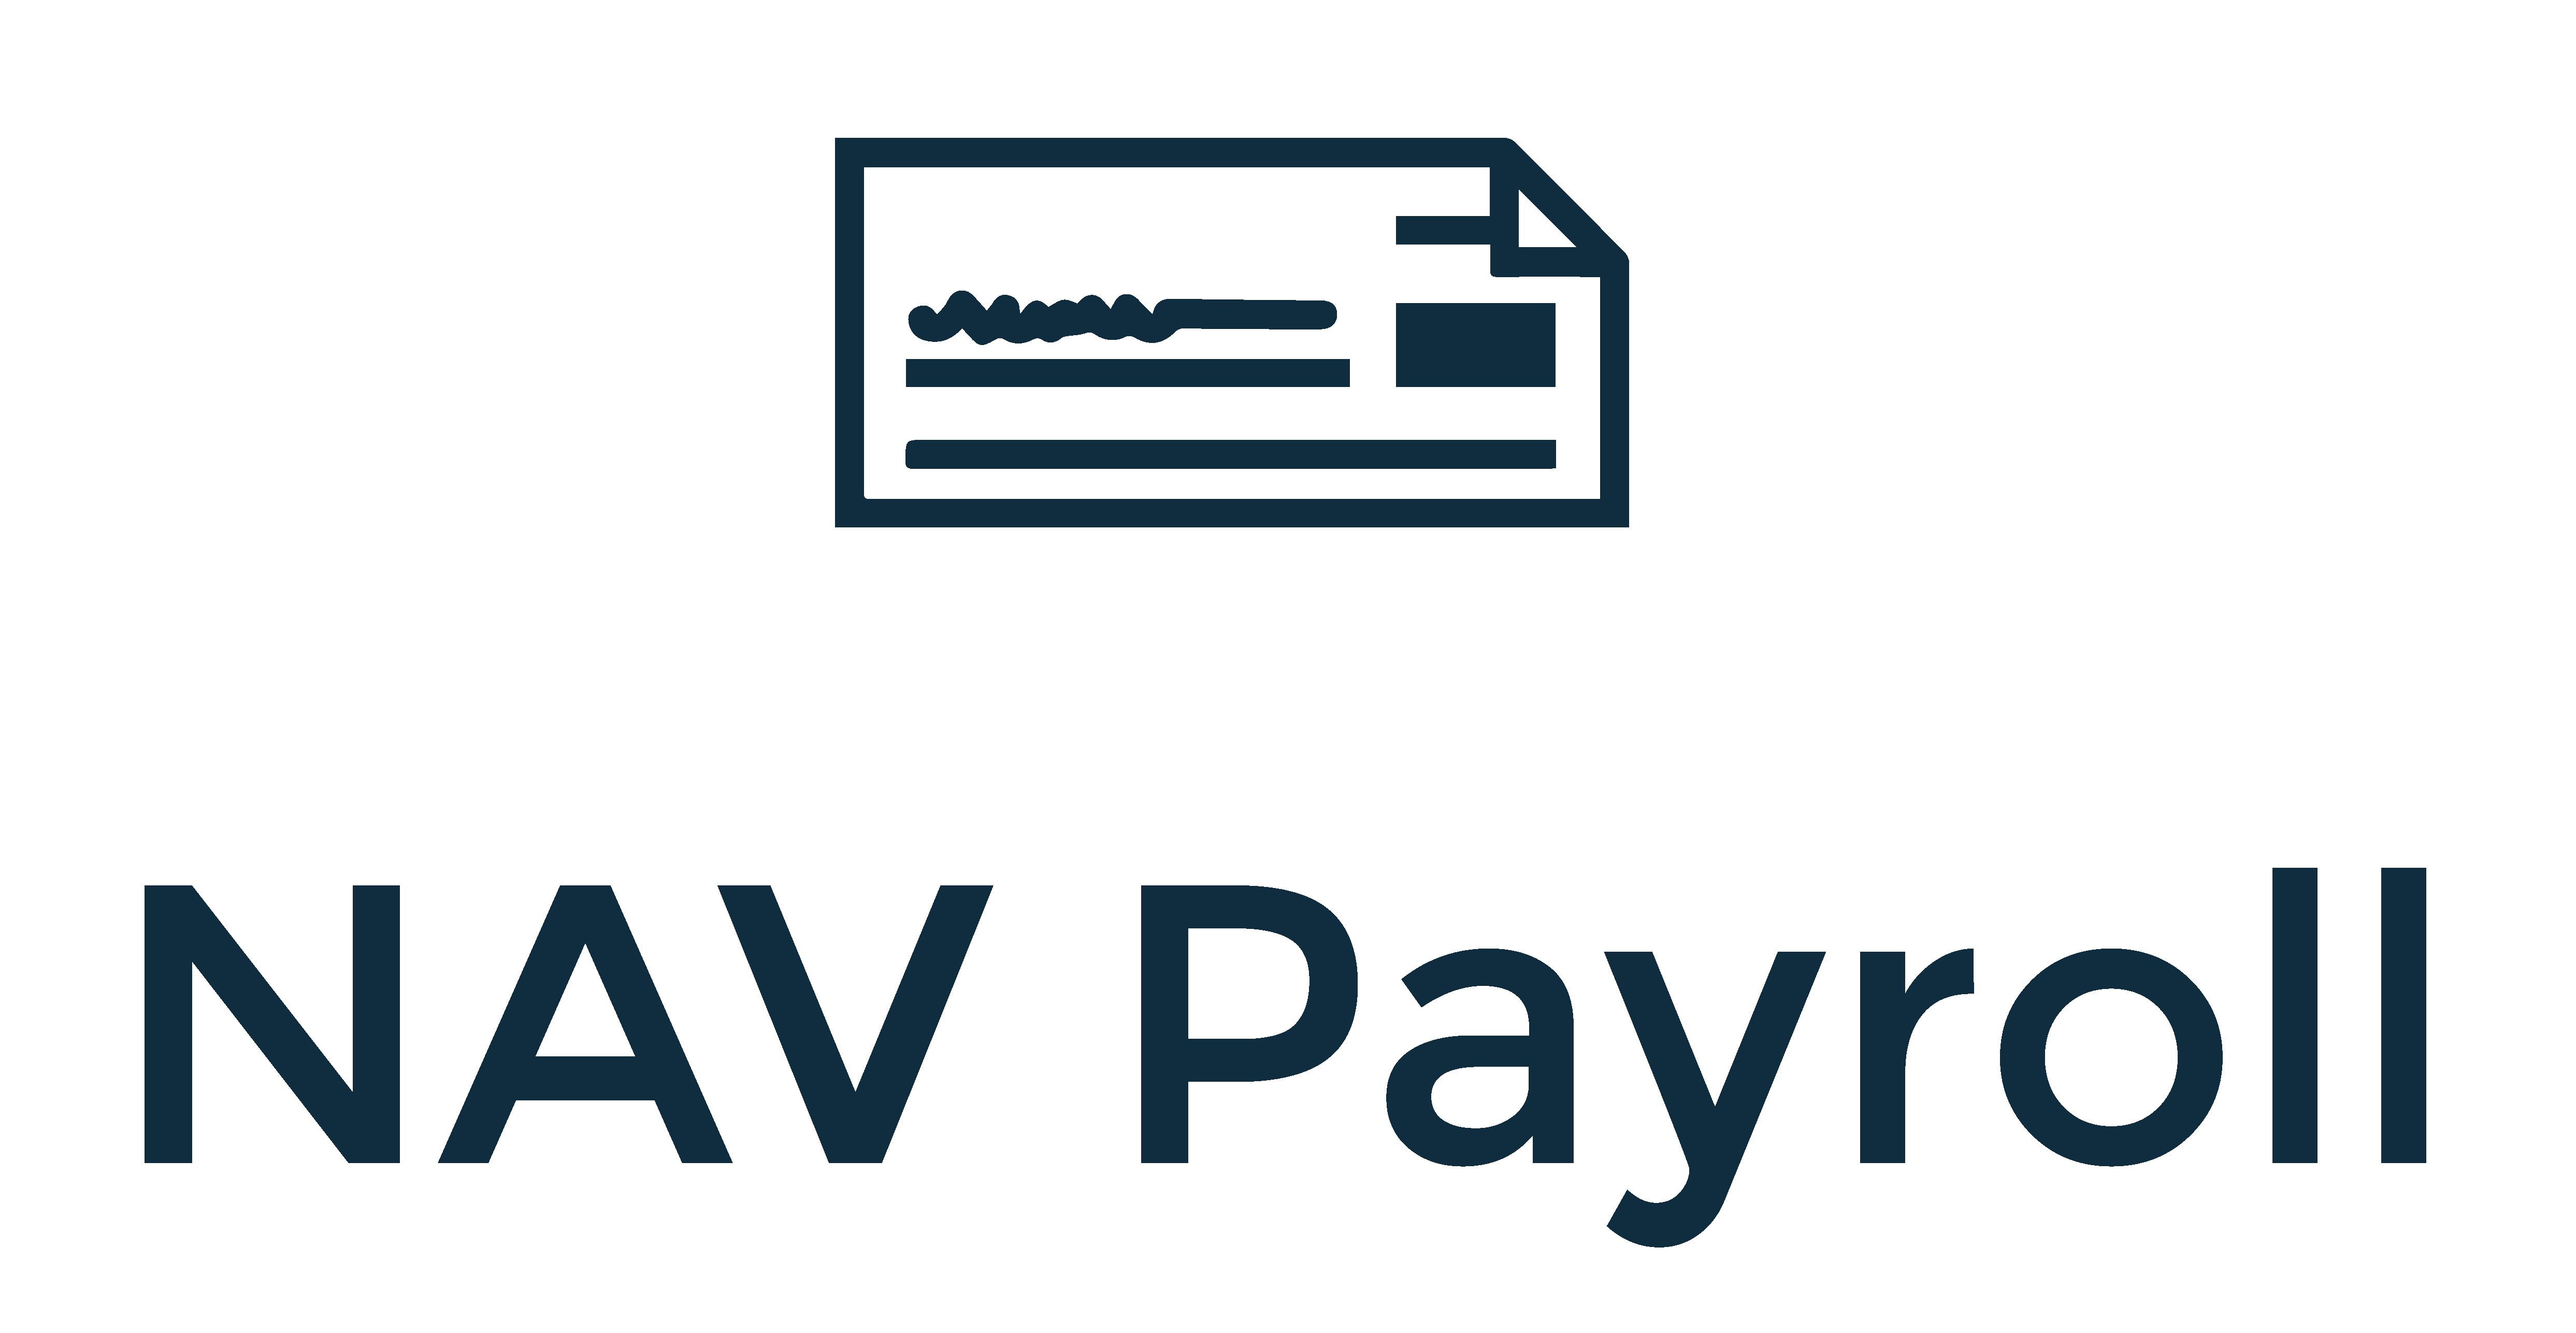 NAV Payroll